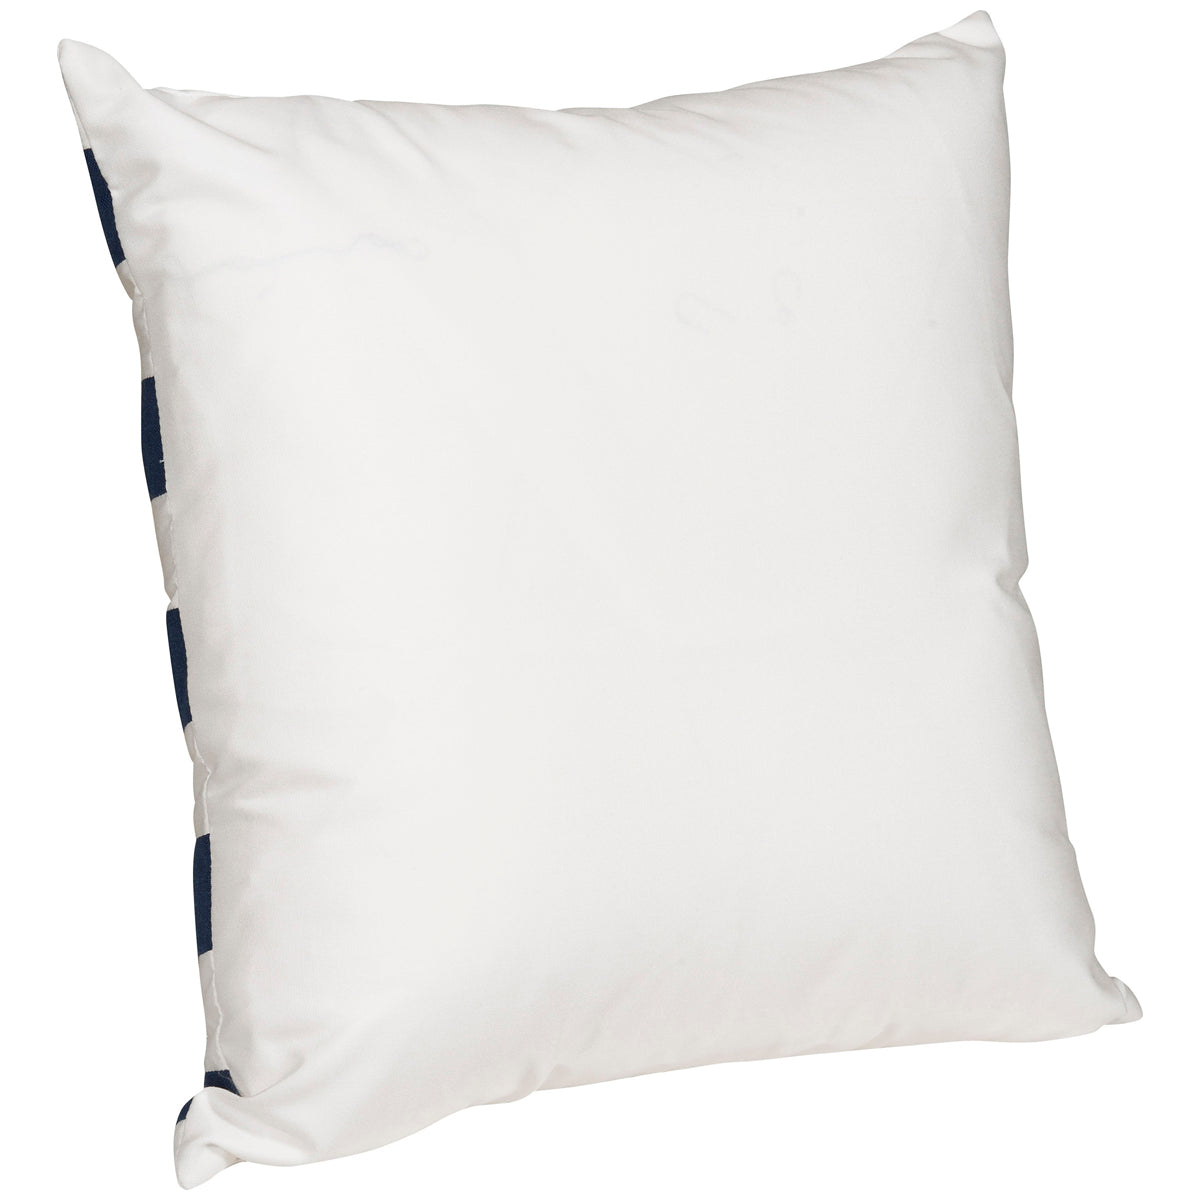 Vanguard Furniture Tidalwave Navy Outdoor Pillow